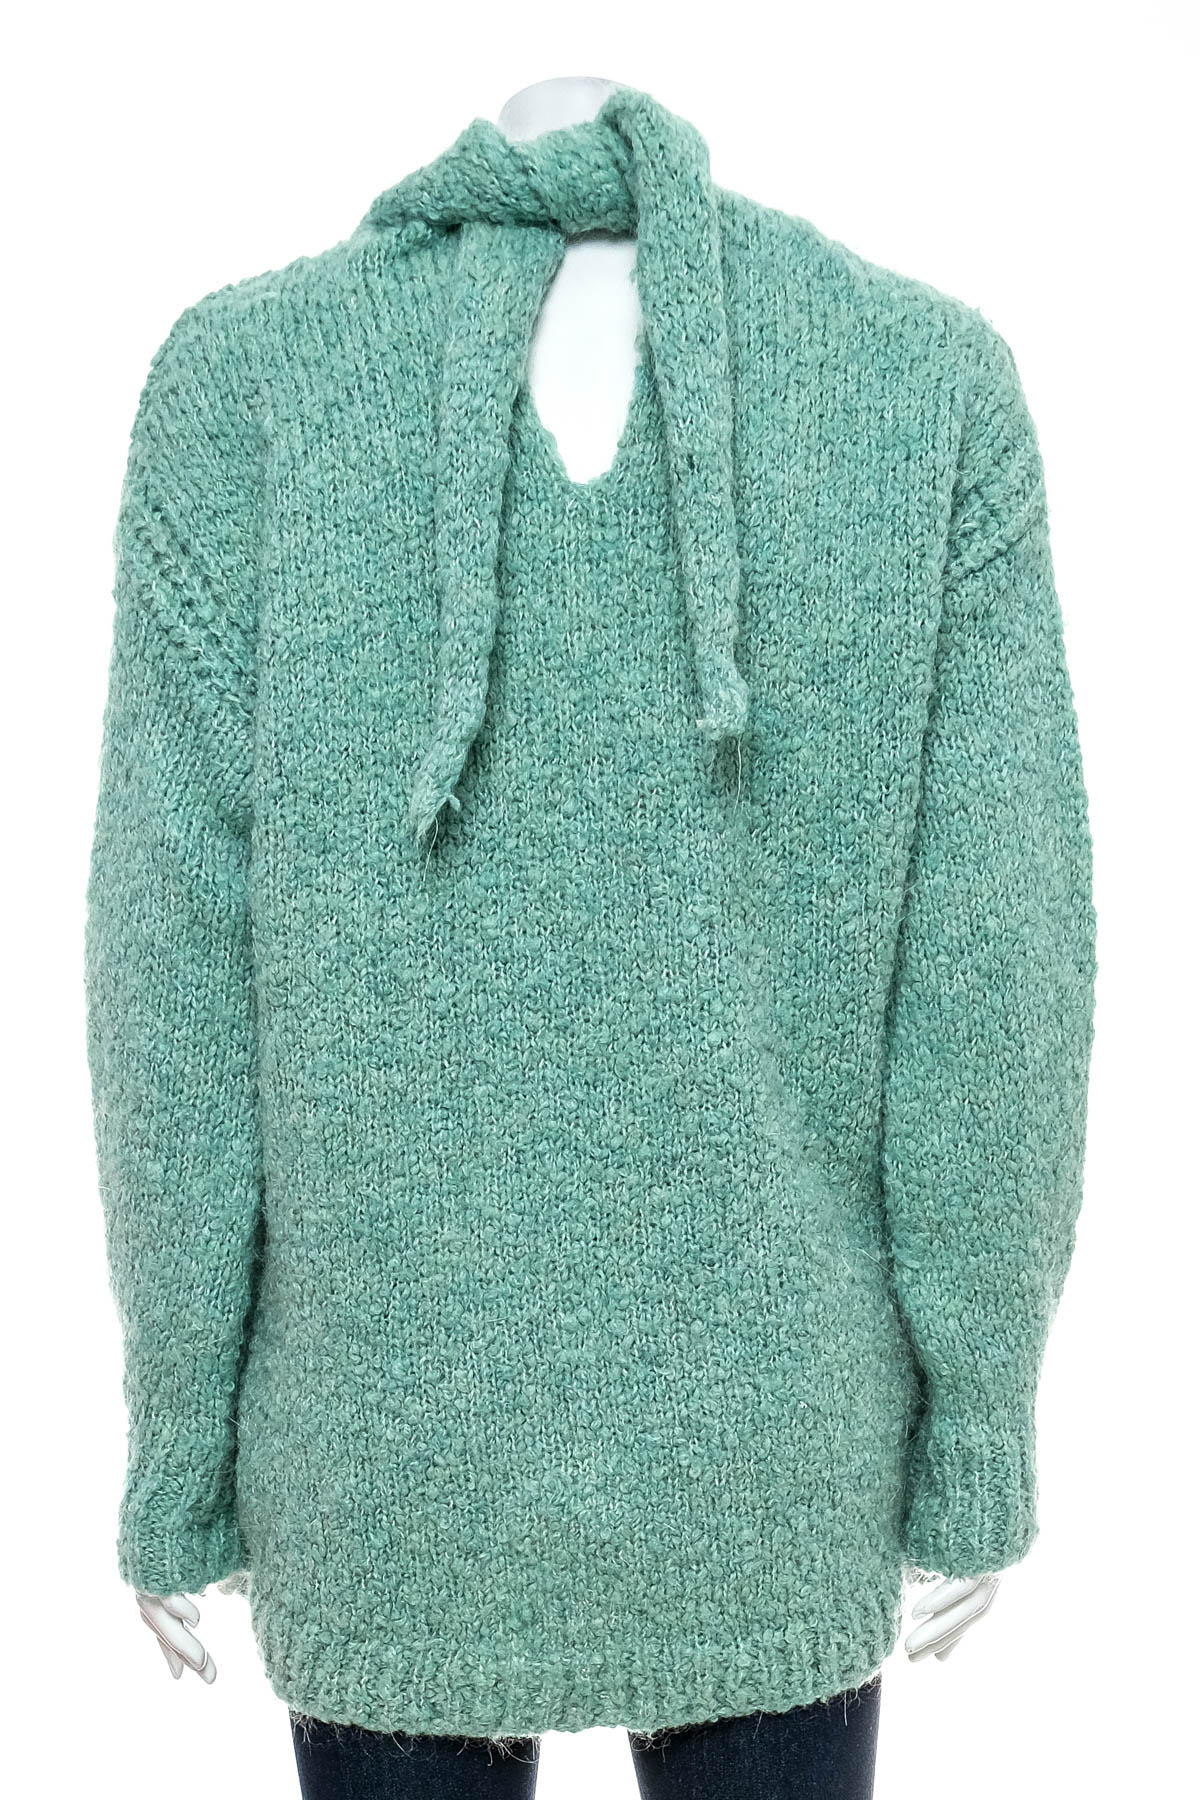 Women's sweater - ZARA Knit - 1